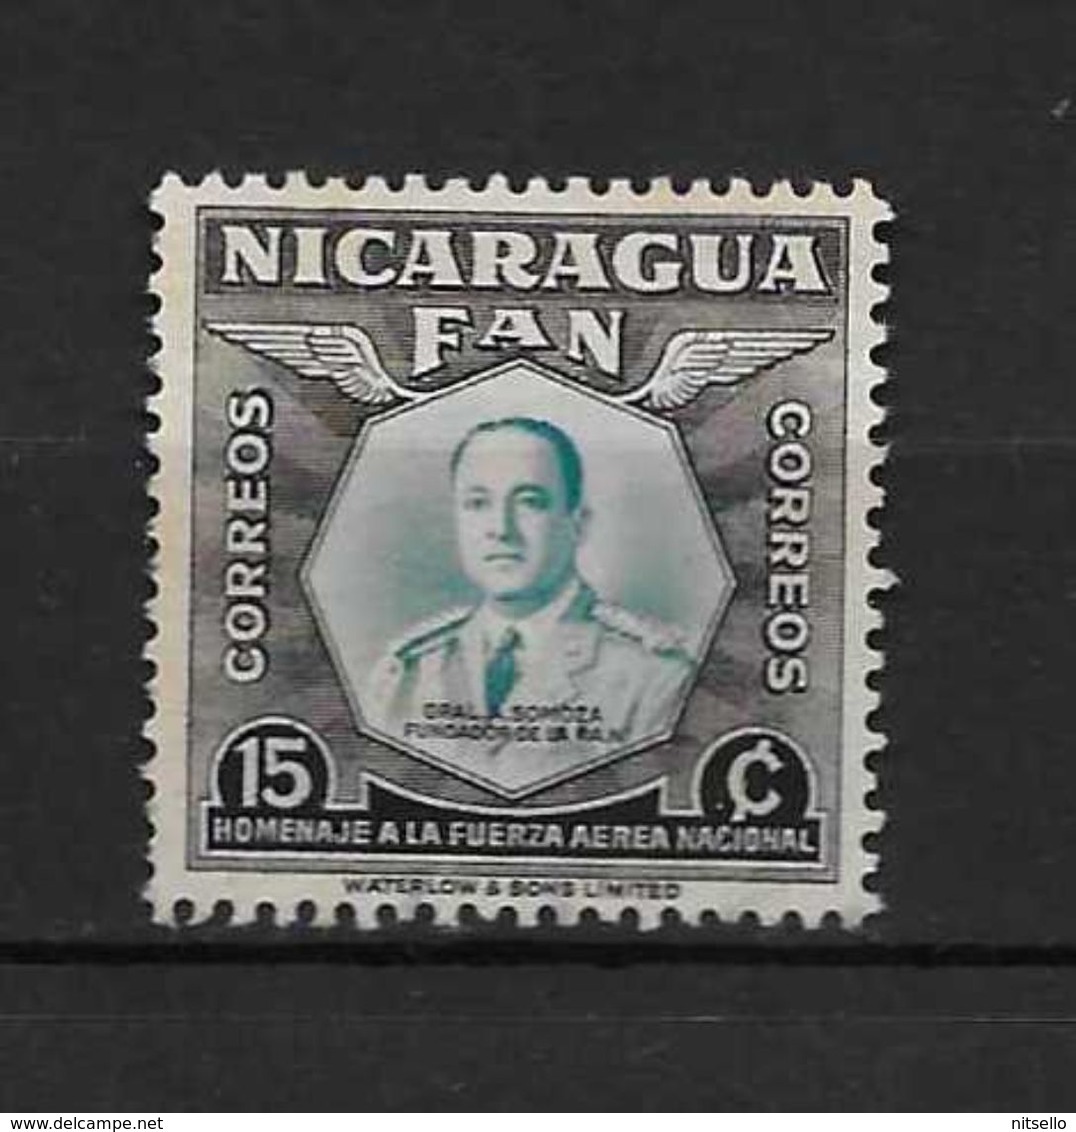 LOTE 1838   ///  (C008) NICARAGUA  LUXE    ¡¡¡¡¡ LIQUIDATION !!!! - Nicaragua